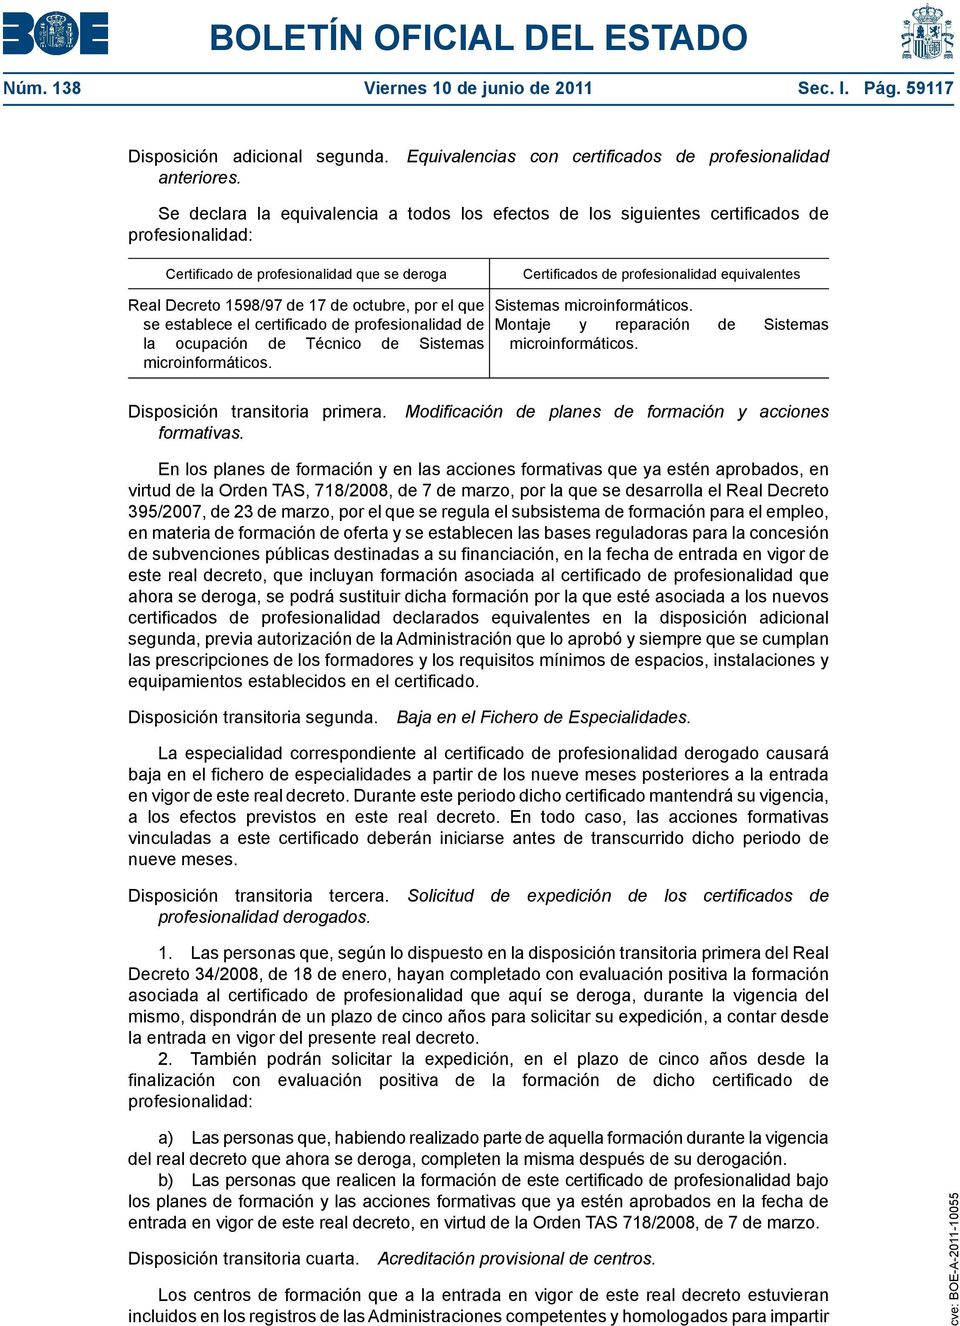 Decreto 1598/97 de 17 de octubre, por el que se establece el certificado de profesionalidad de la ocupación de Técnico de Sistemas microinformáticos.